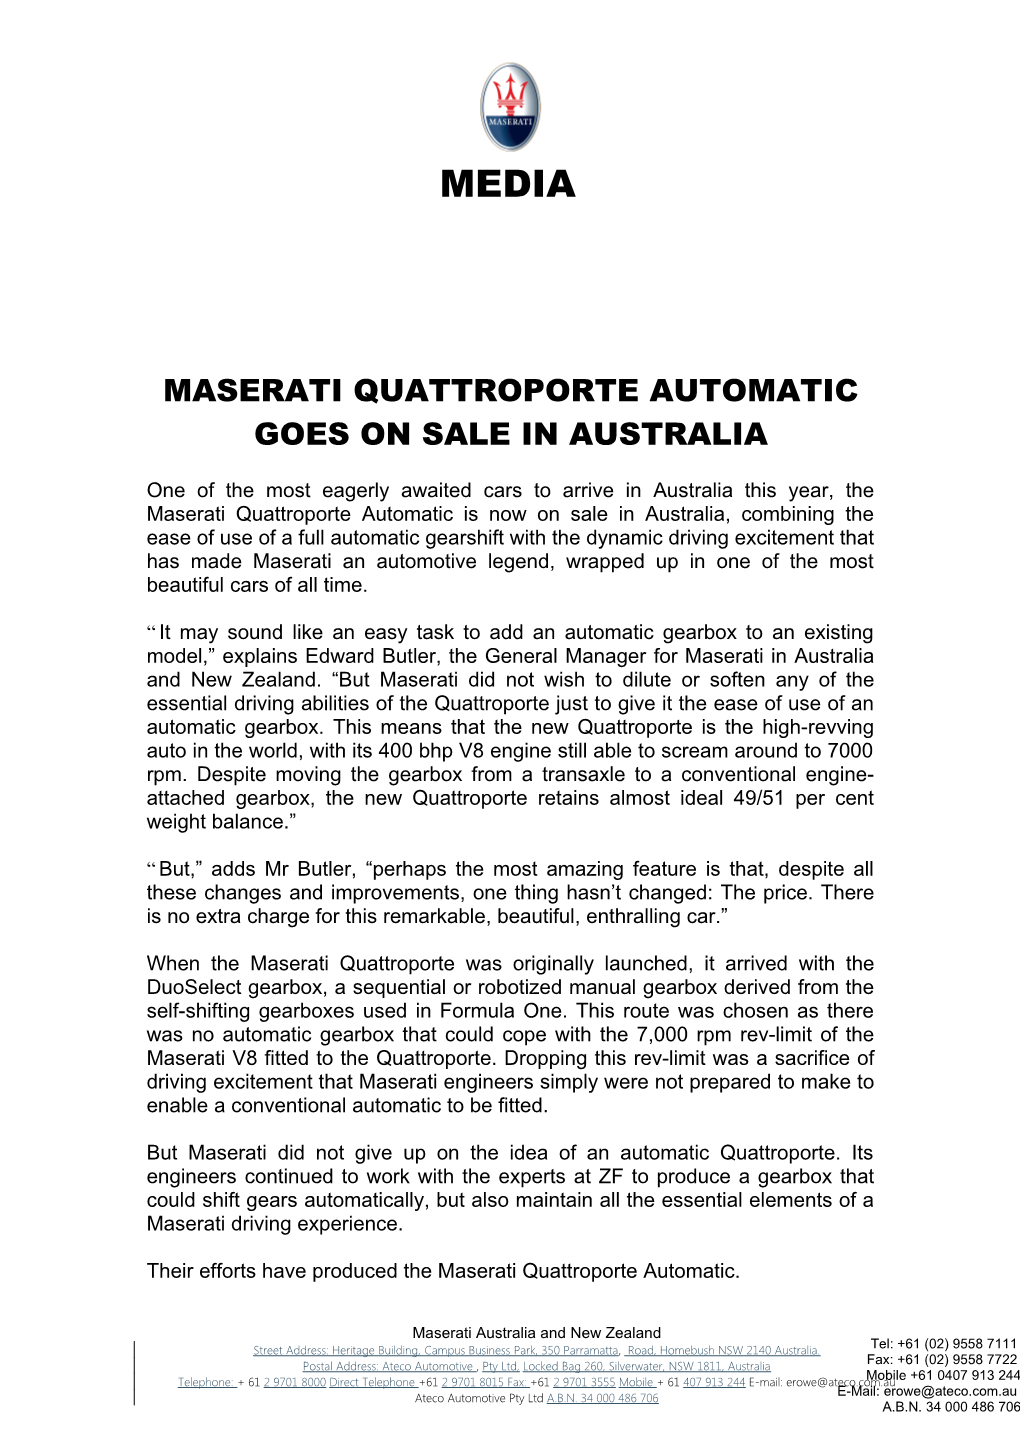 Maserati Quattroporte Automatic Goes on Sale in Australia